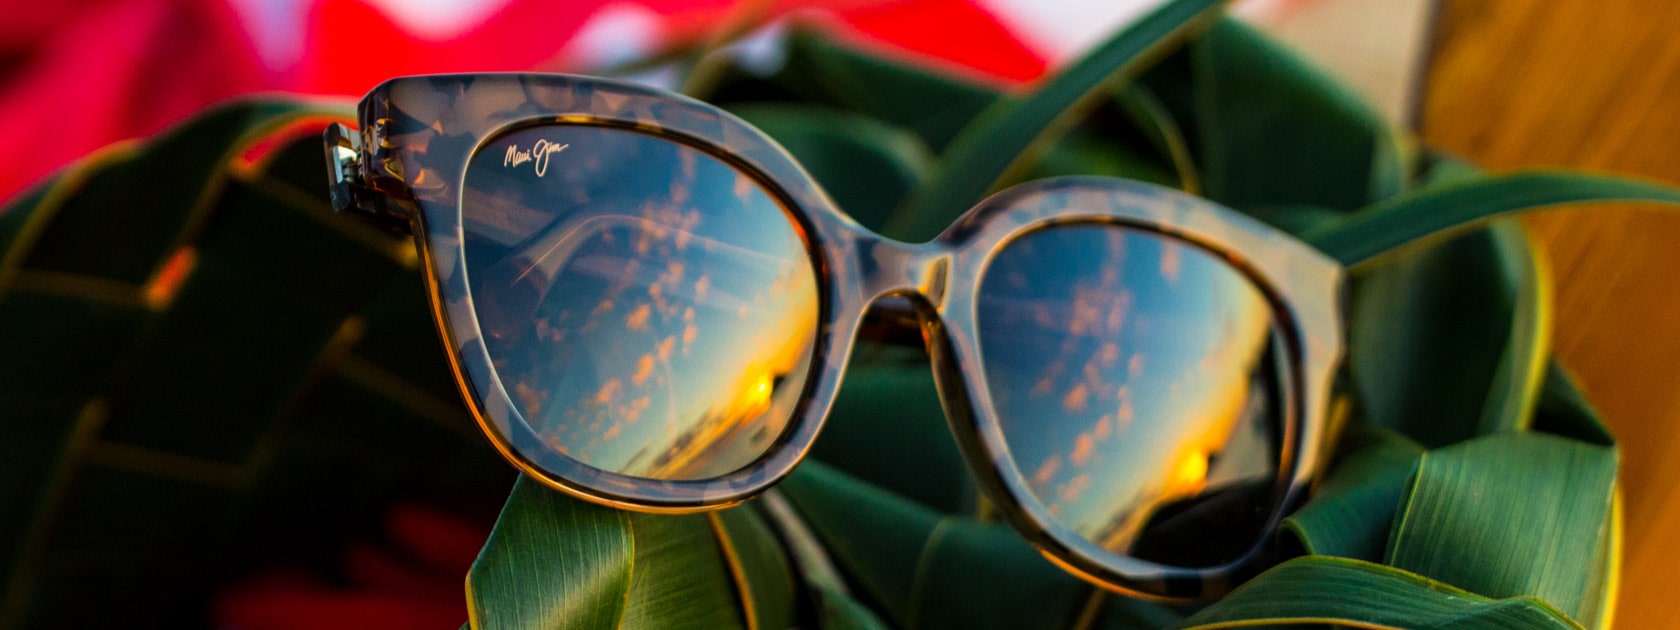 lunettes de soleil à monture écaille avec reflet de ciel dans les verres présentées sur des feuilles vertes